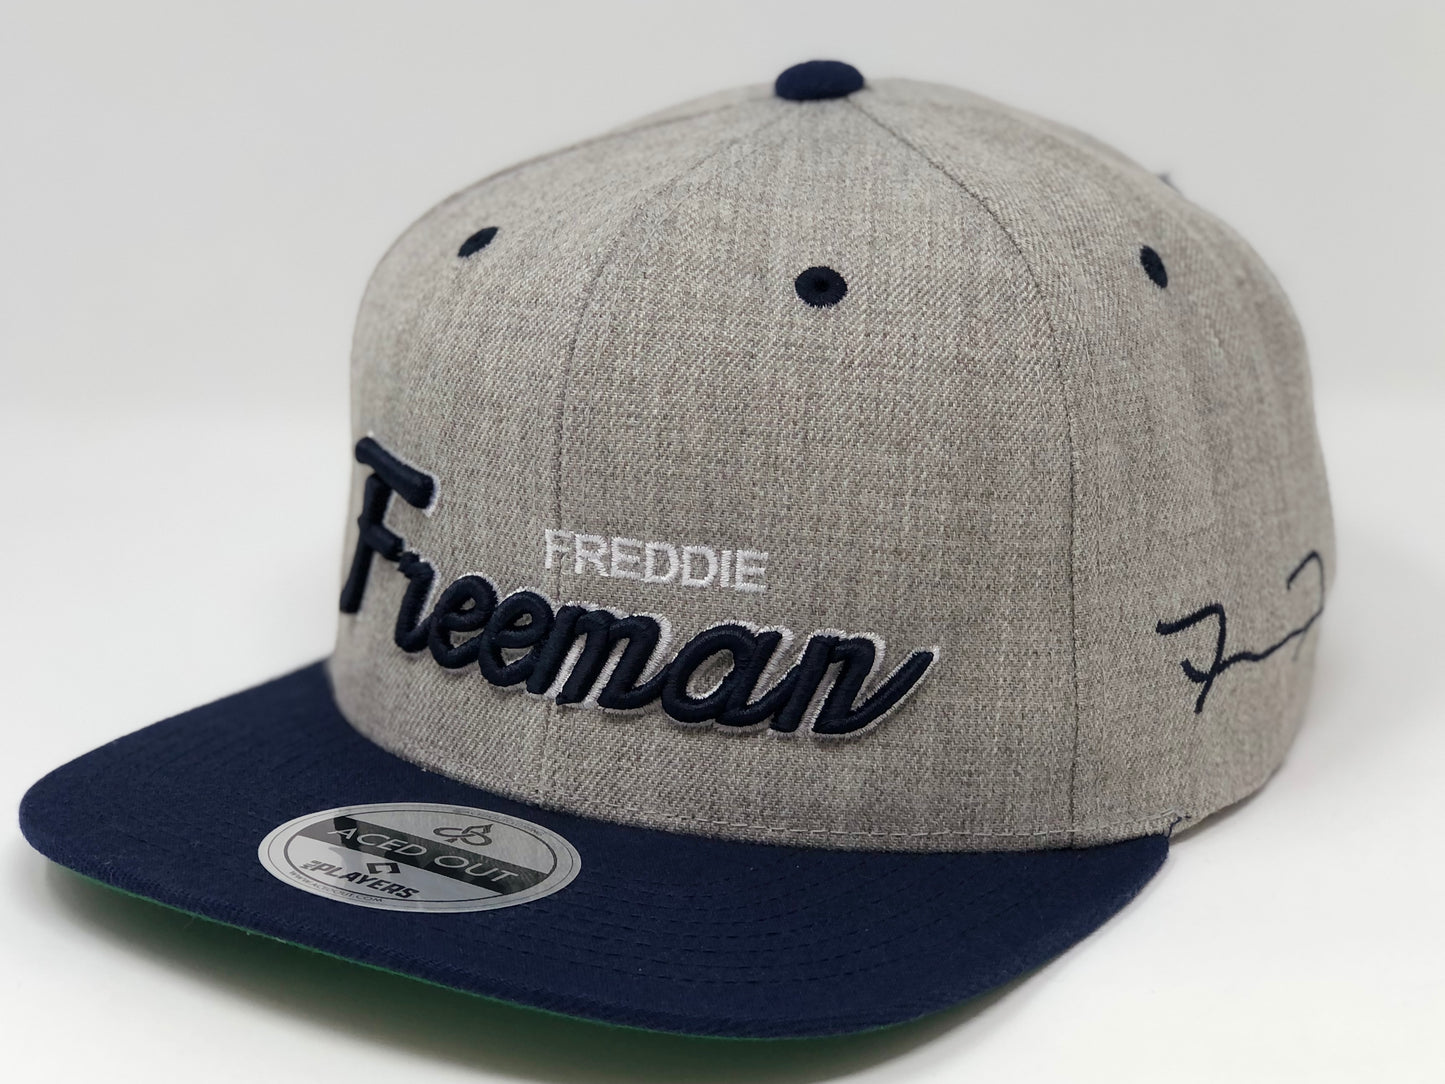 Freddie Freeman Script Hat - Grey/Navy Snapback